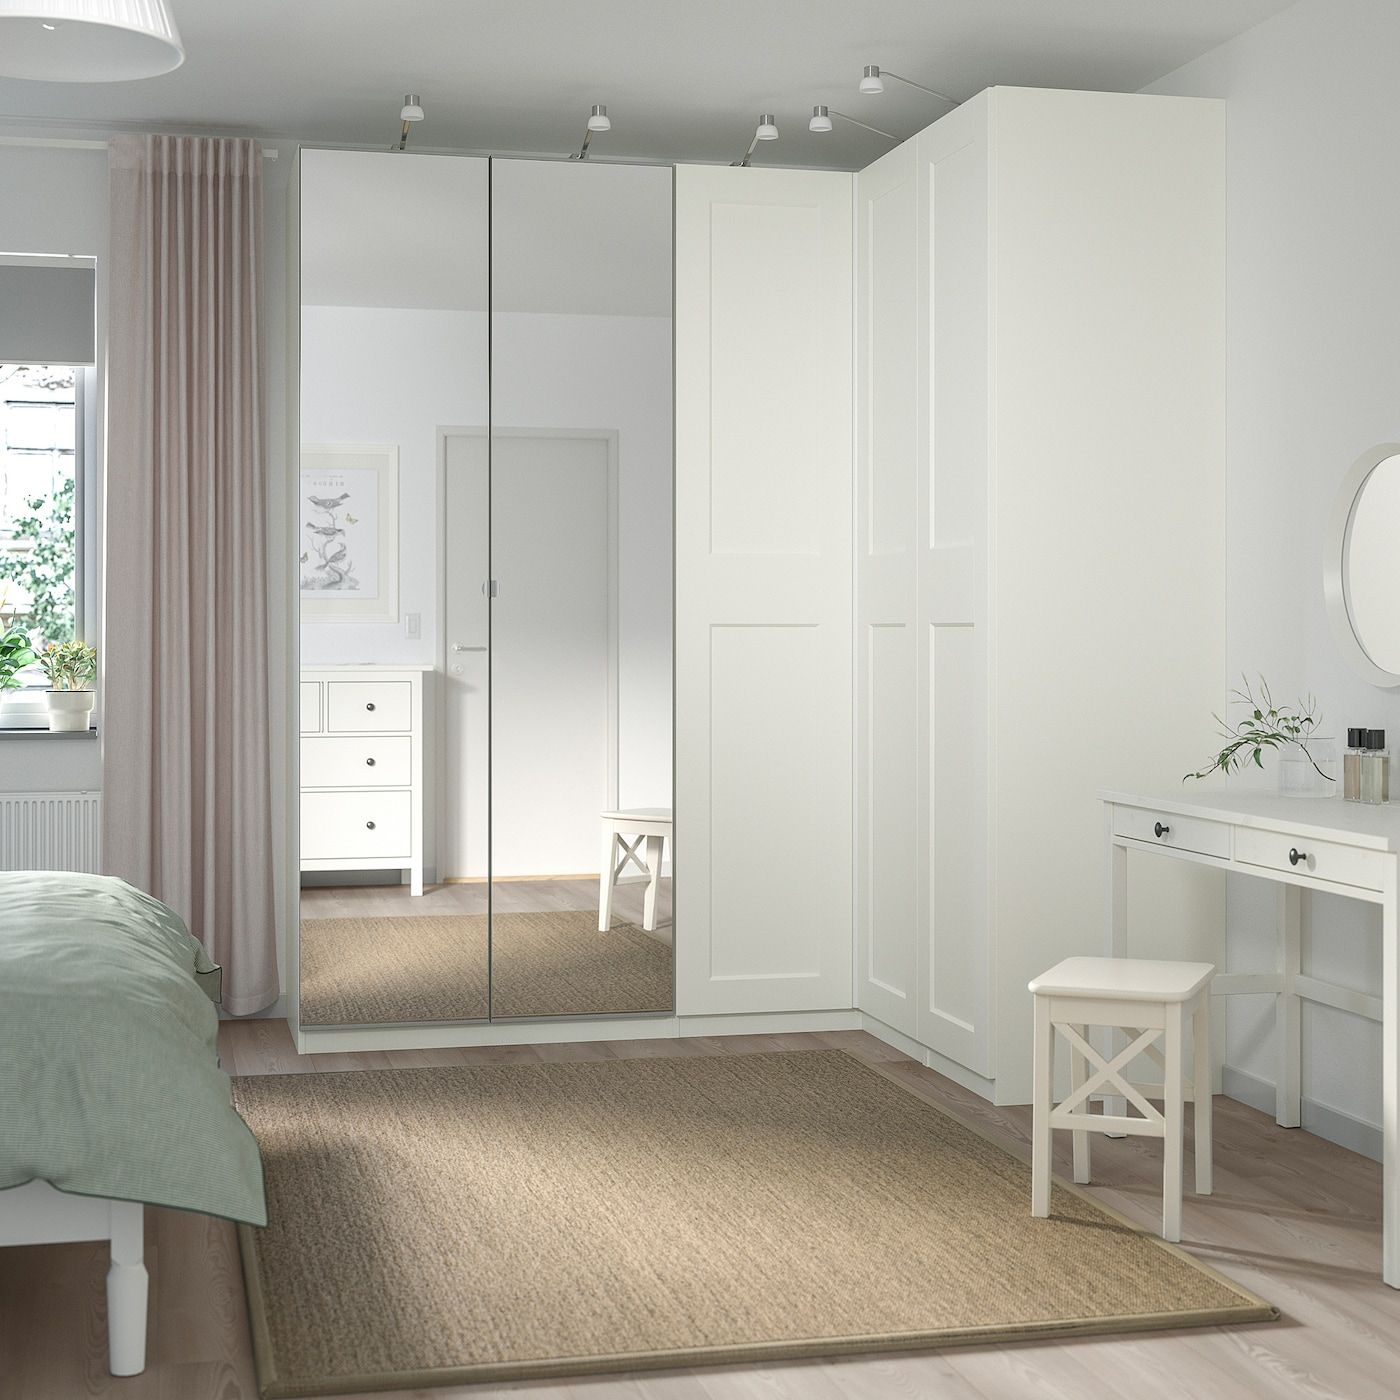 Pax / Grimo/vikedal Corner Wardrobe, White/mirror Glass, 210/160x236 Cm –  Ikea Inside Mirrored Corner Wardrobes (View 14 of 15)